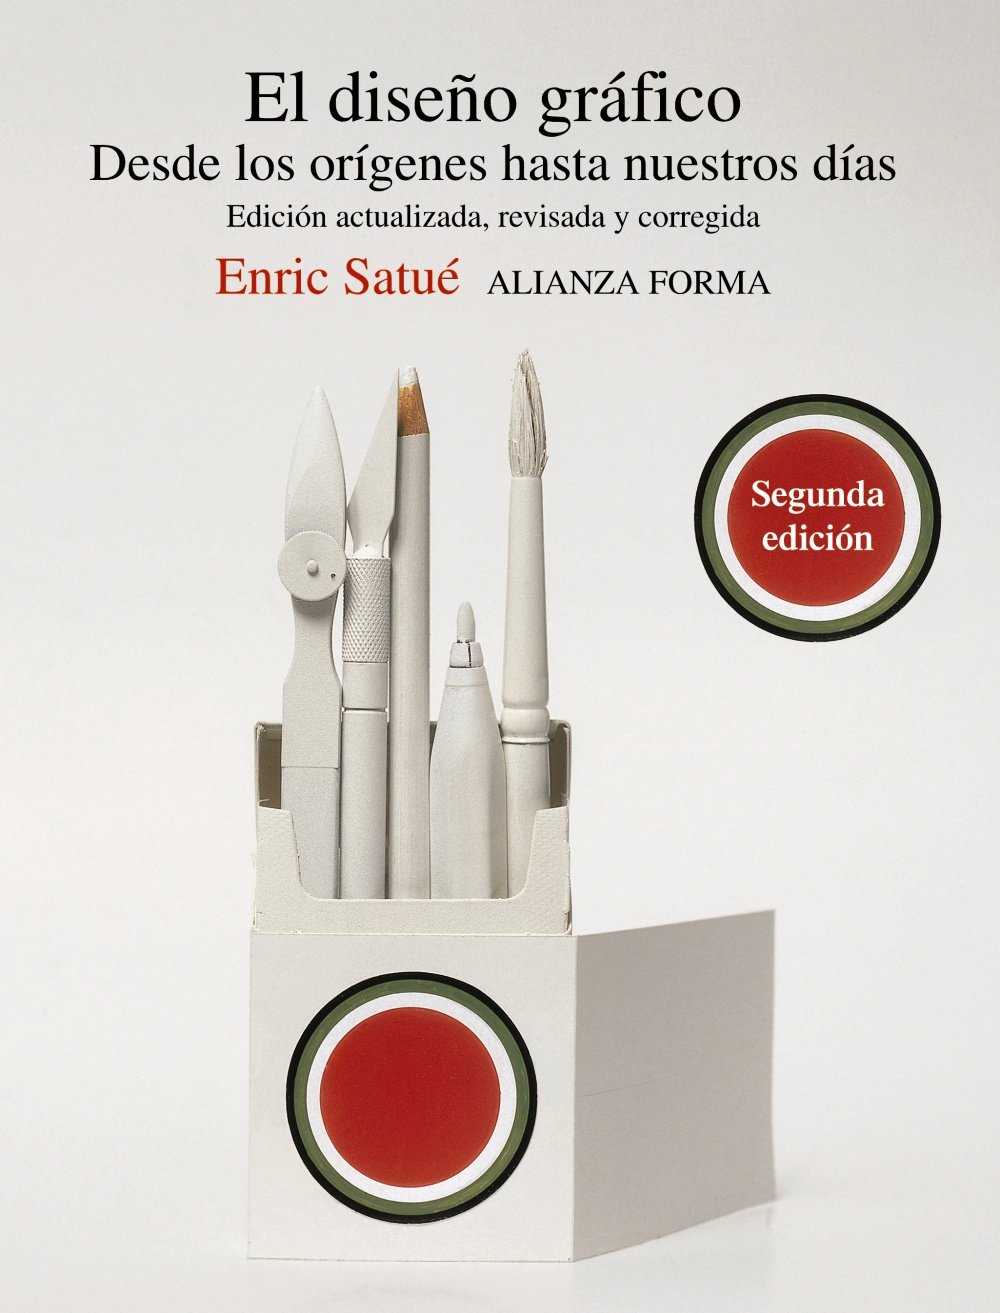 La Historia del Diseño Gráfico se puede remontar desde los orígenes hasta nuestros días con este excelente libro de Enric Satué Llop.